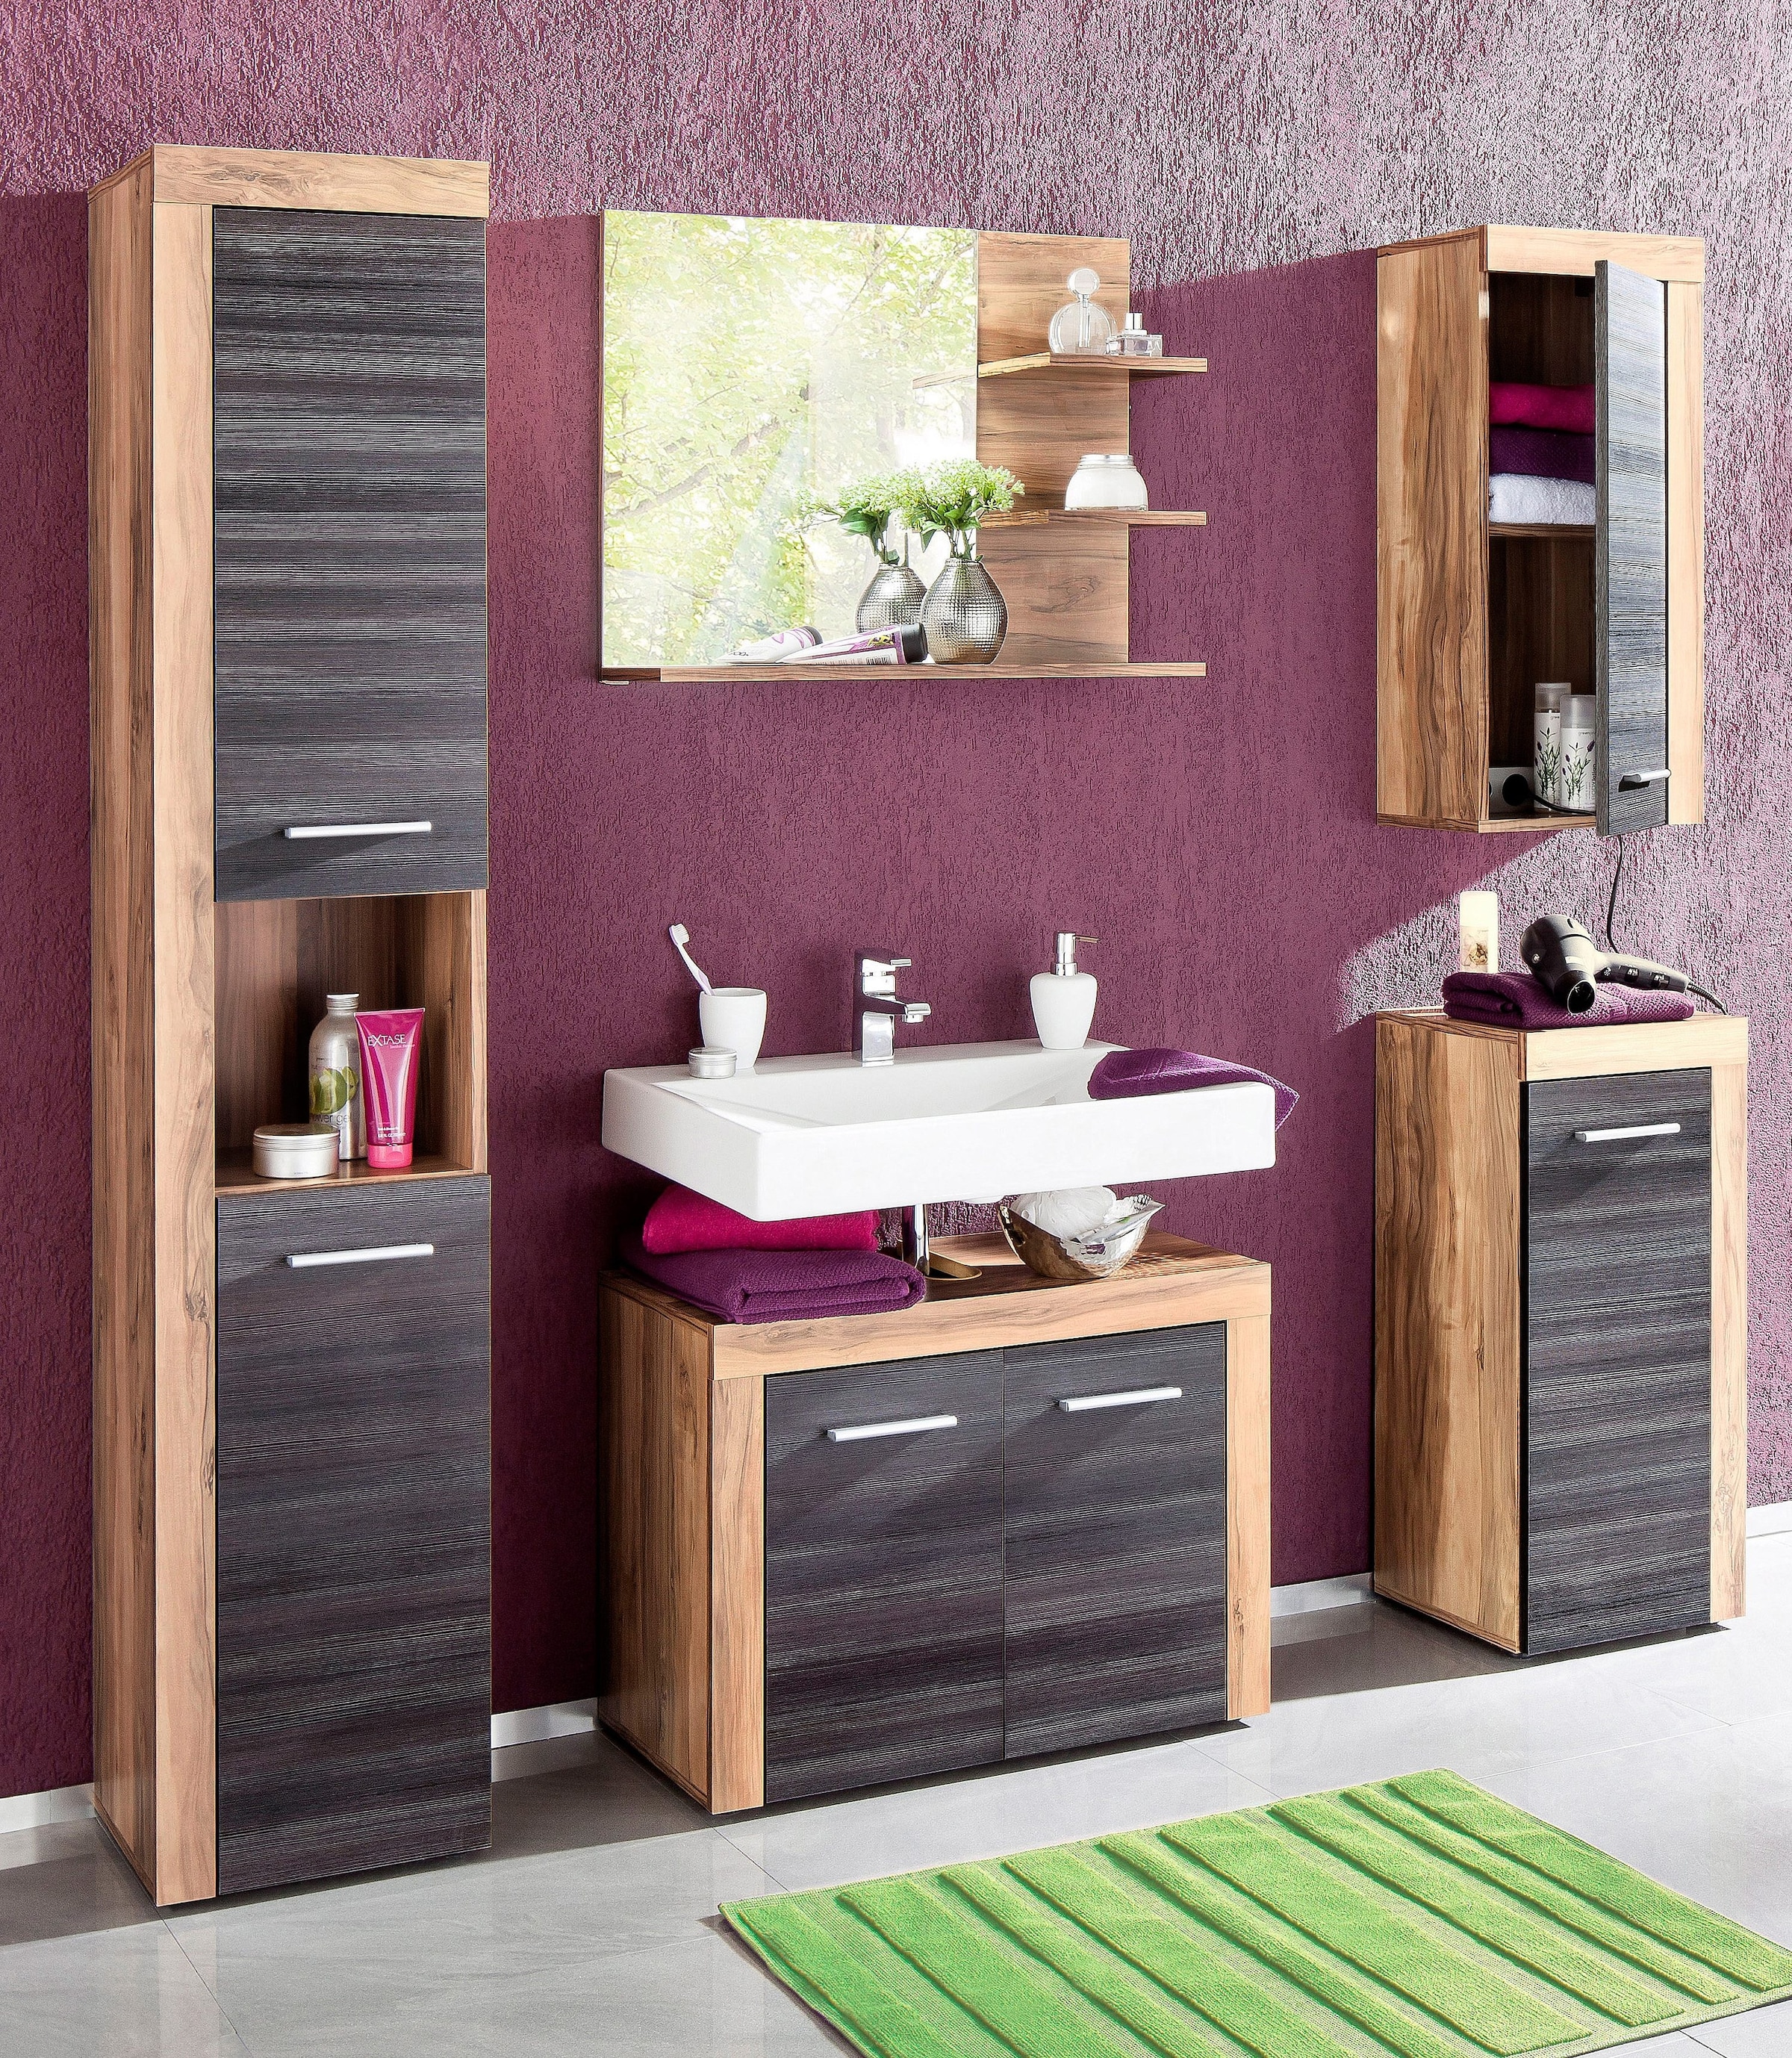 welltime Badspiegel »Carcassonne«, mit Rahmenoptik in Holztönen und 3 Ablagen